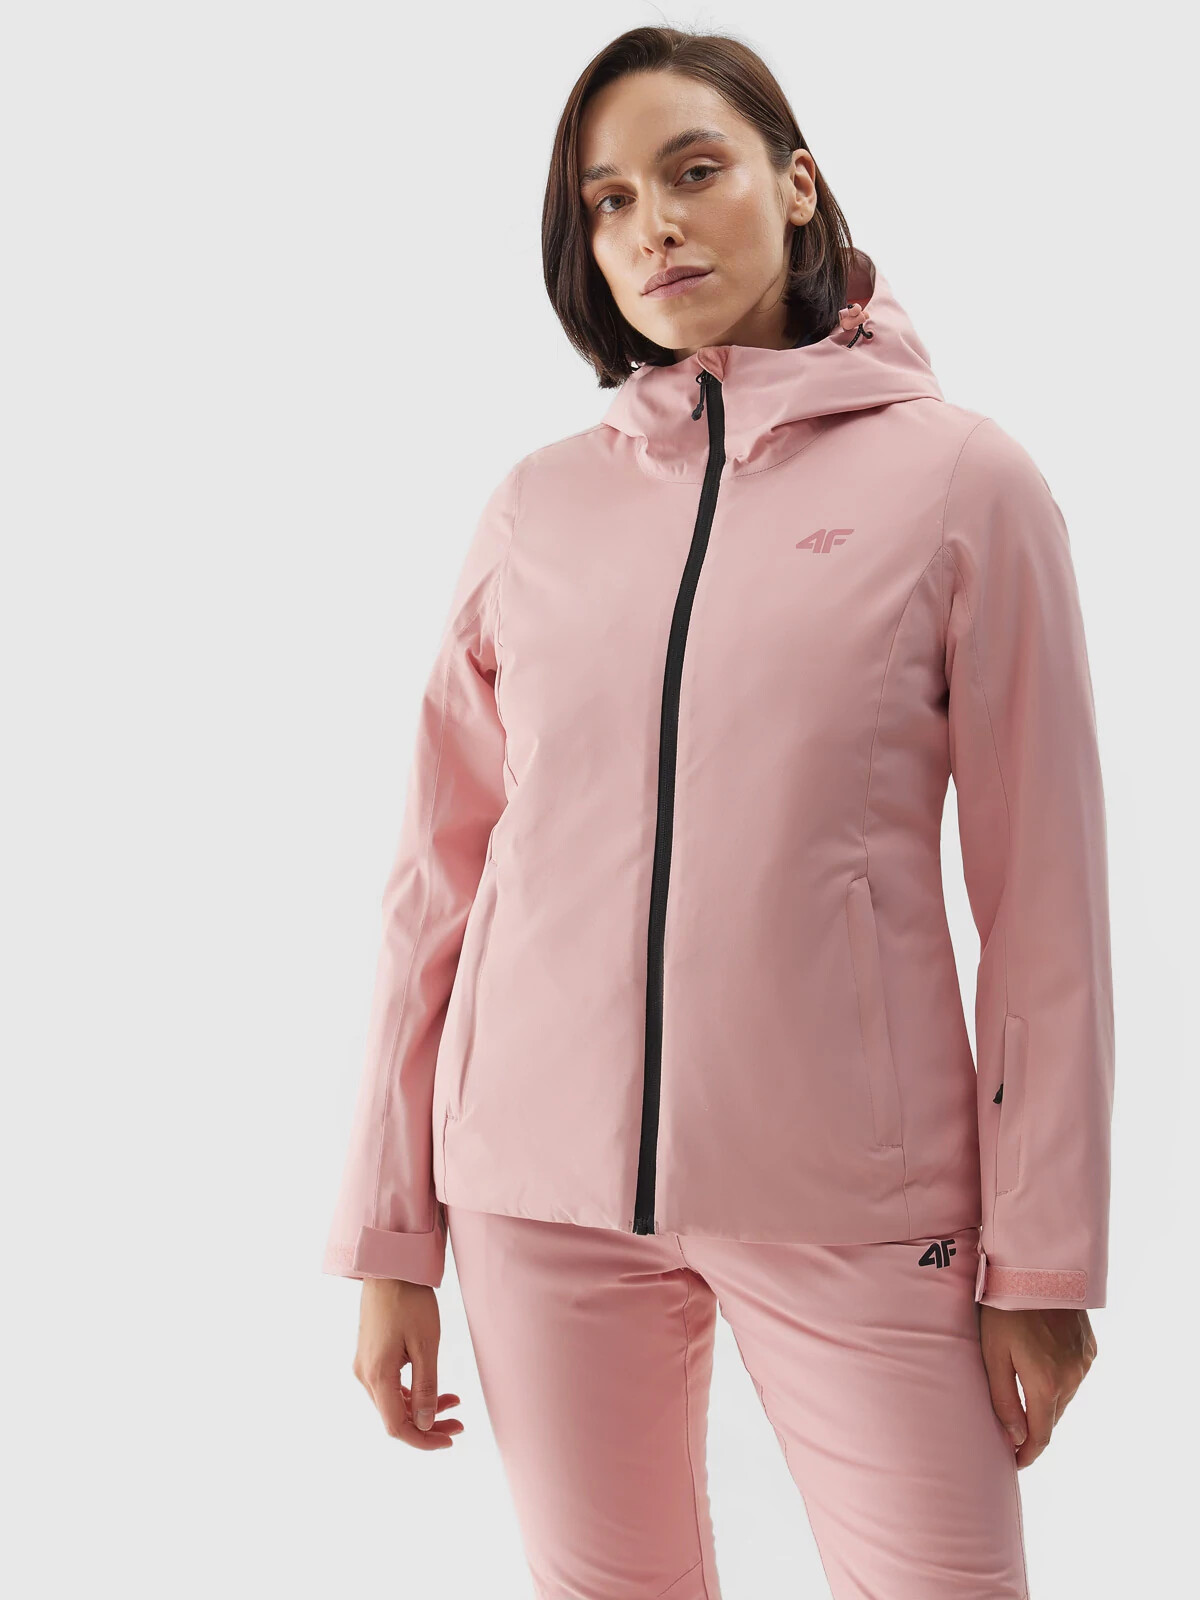 Dámská lyžařská bunda membrána 5000 4FAW23TJACF120-56S světle růžová - 4F L